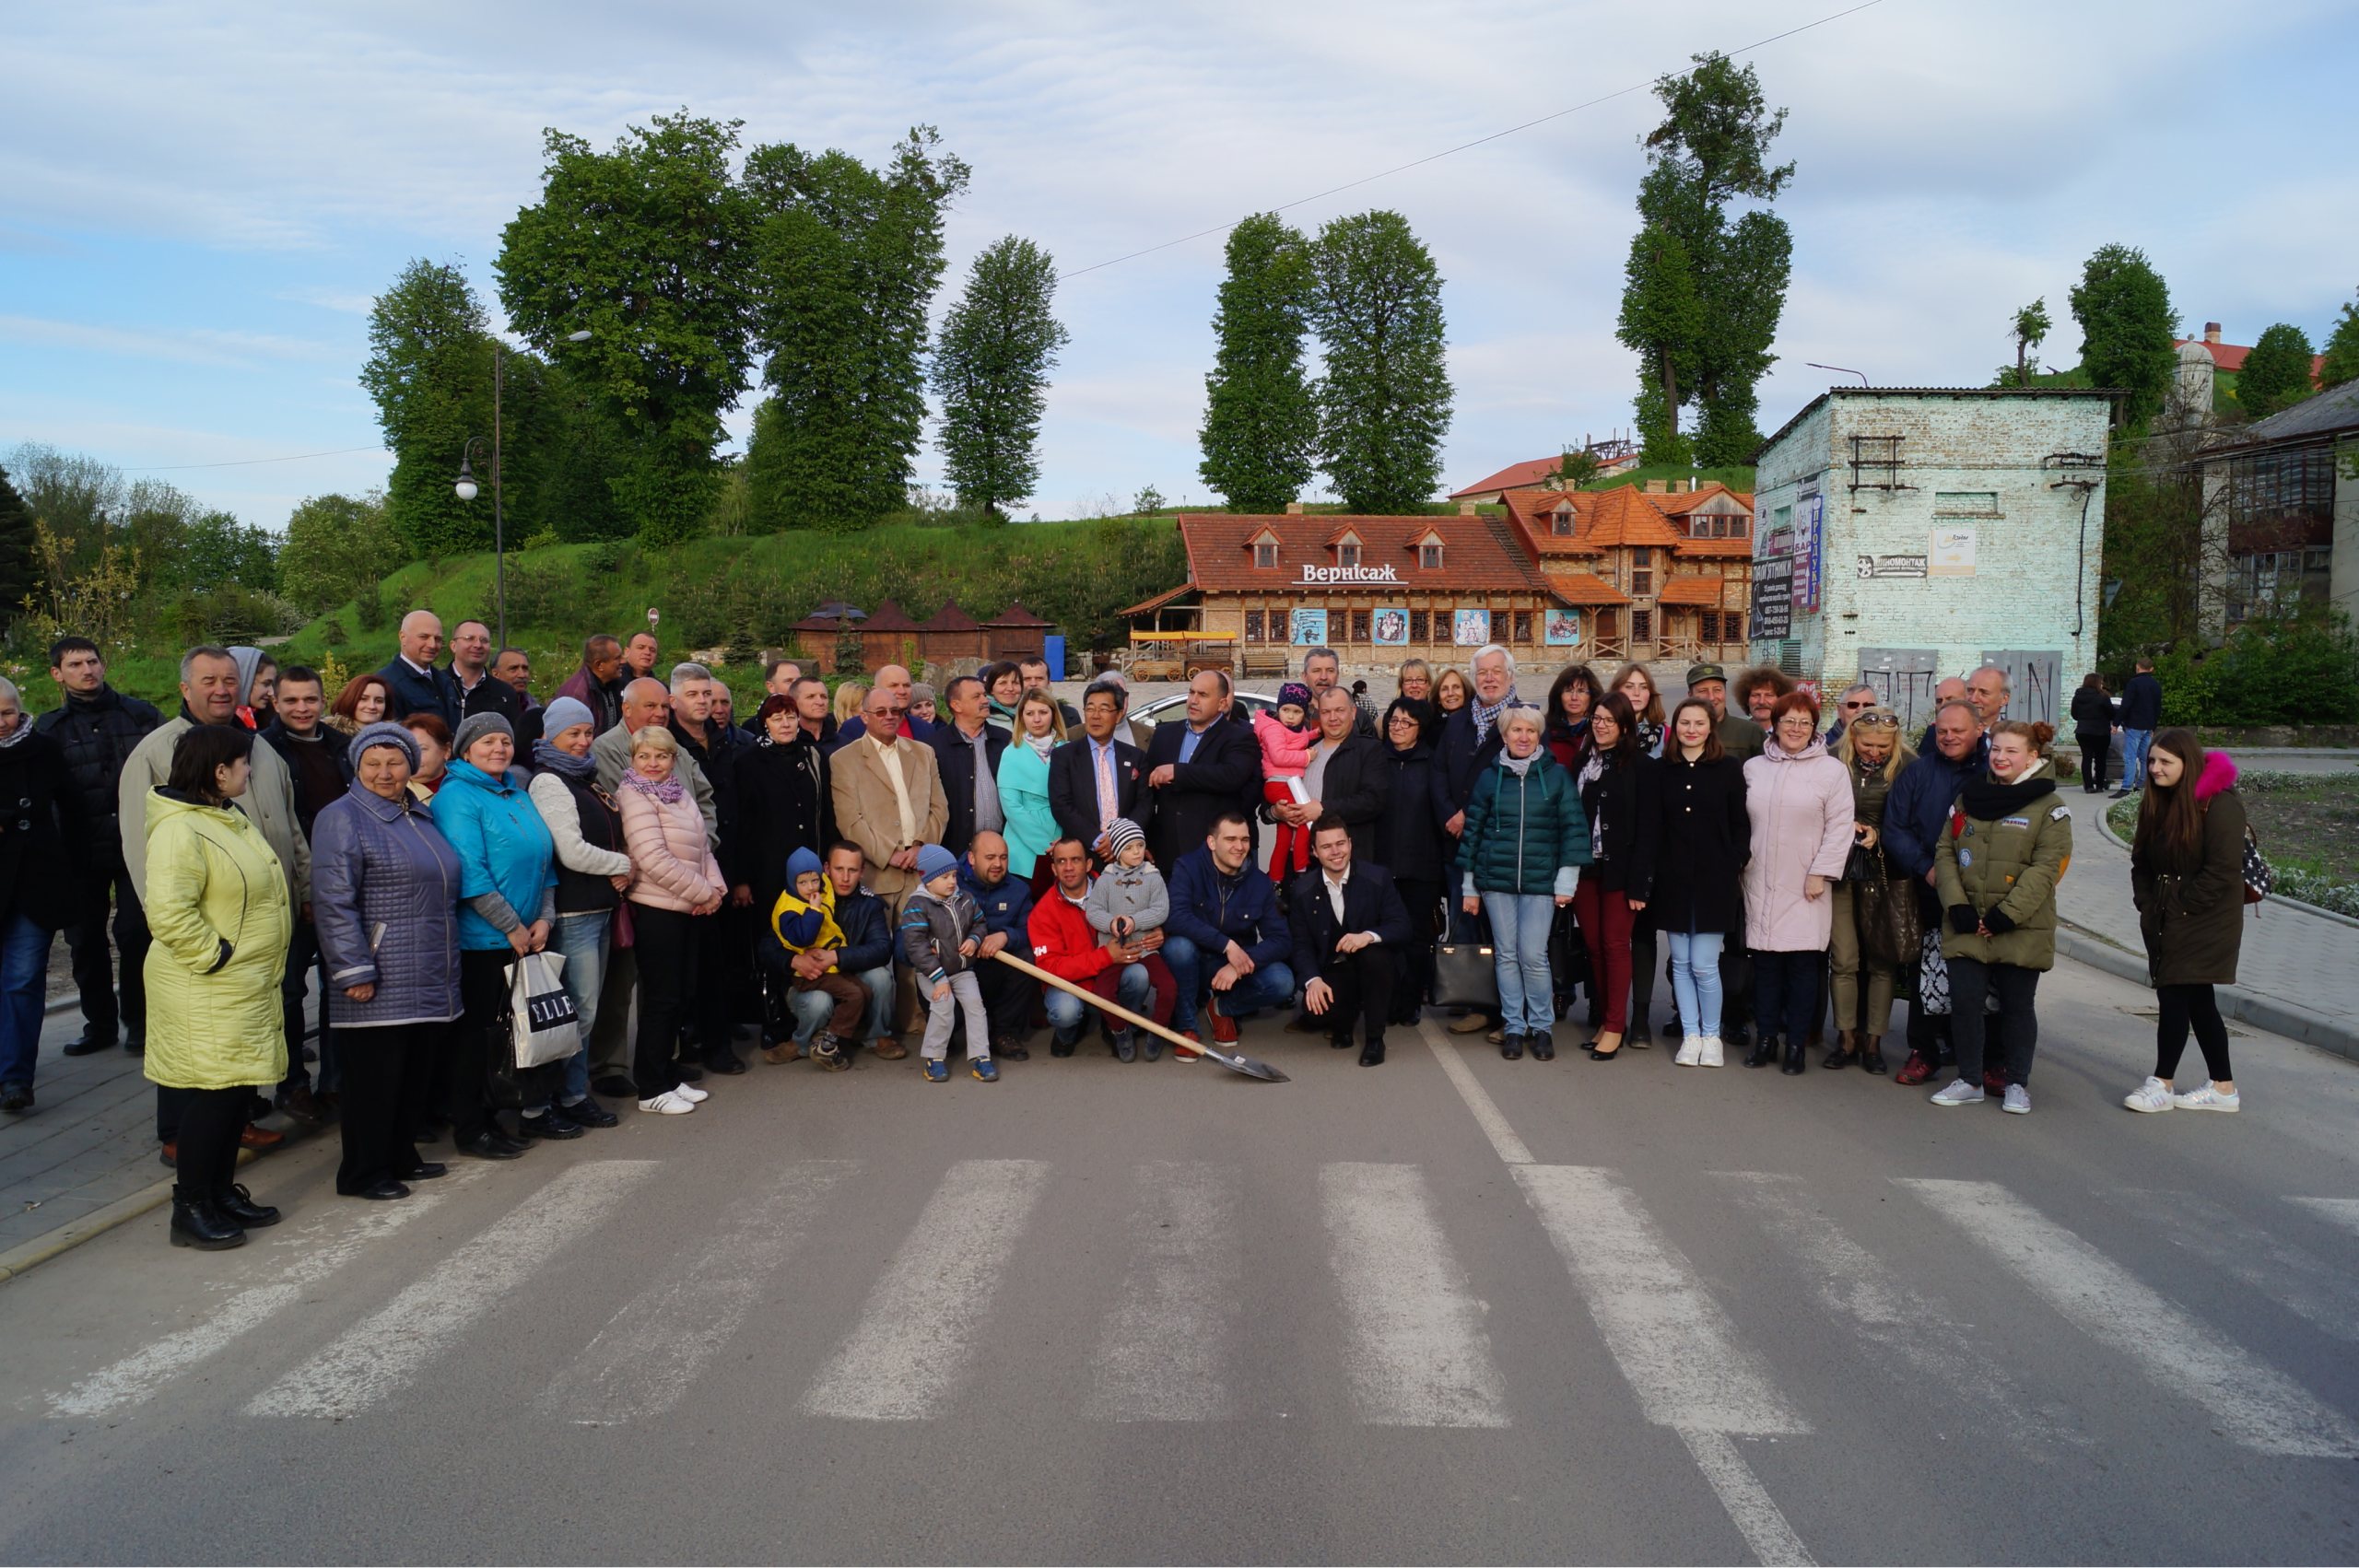 Gruppenfoto mit japanischer Delegation, Schöninger Delegation und Freunde aus Solotschiw.